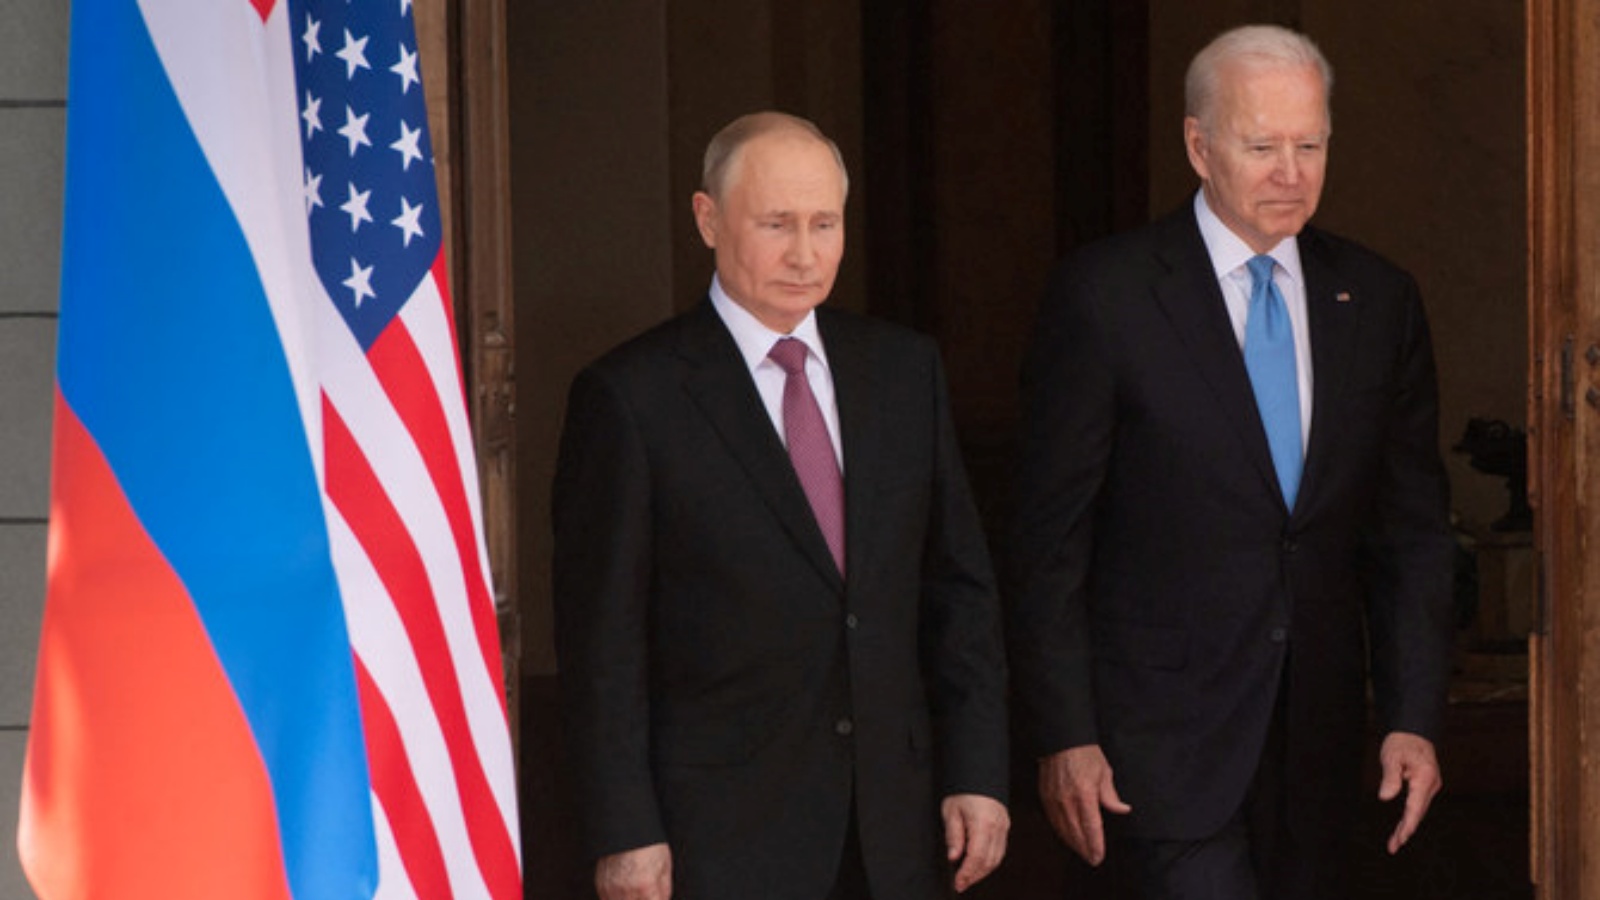 في هذه الصورة التي تم التقاطها في 16 يونيو 2021، الرئيس الأميركي جو بايدن (يمين) والرئيس الروسي فلاديمير بوتين يحضران قمة أميركية روسية في فيلا لاغرانج بجنيف.